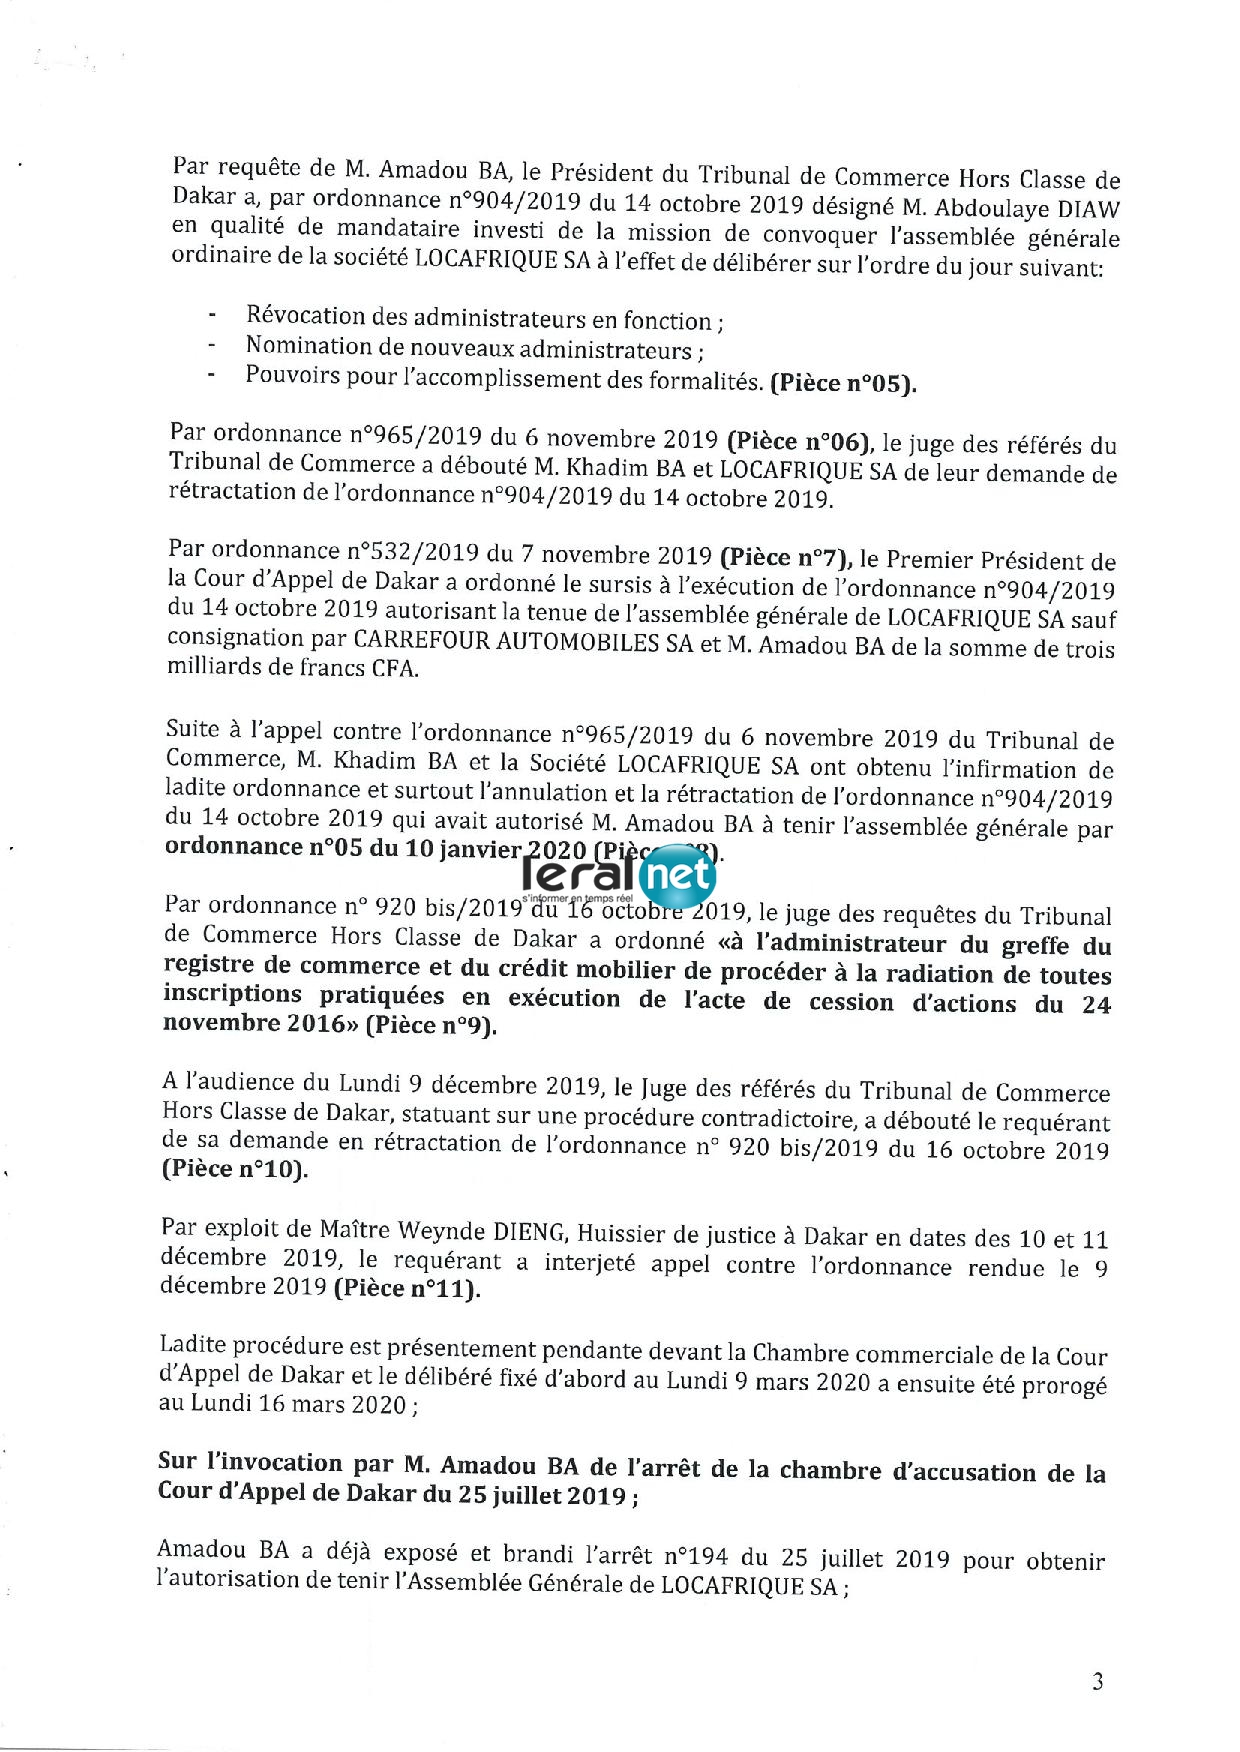 Gros scandale à la SAR entre le PCA, le DG et Amadou Bâ